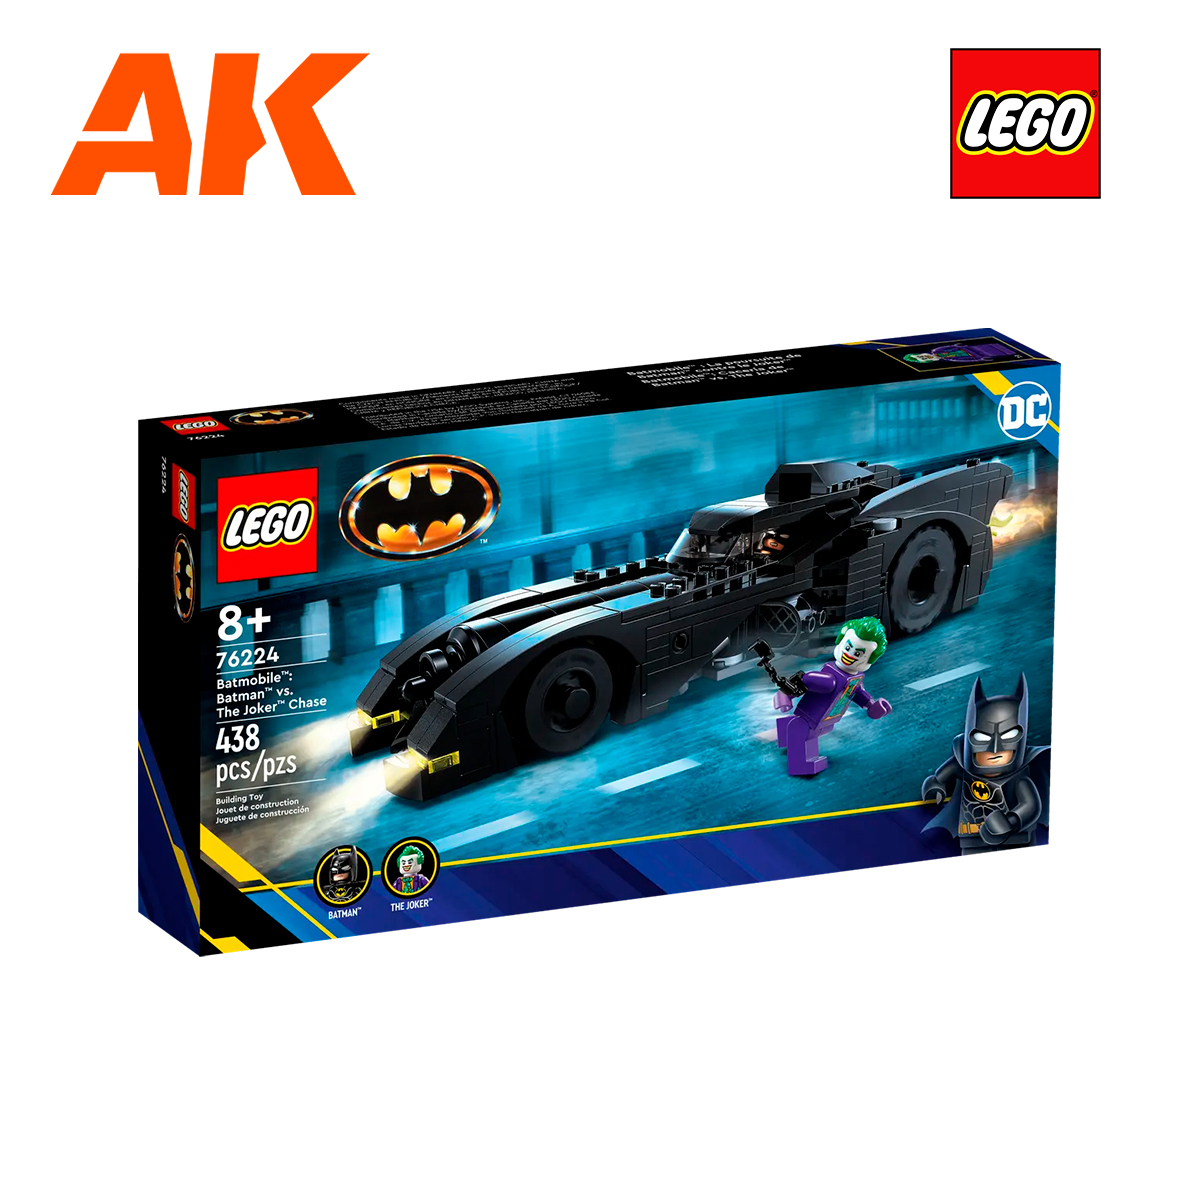 LEGO DC Super Heroes Minifigure - Batman - no cape - Extra Extra Bricks